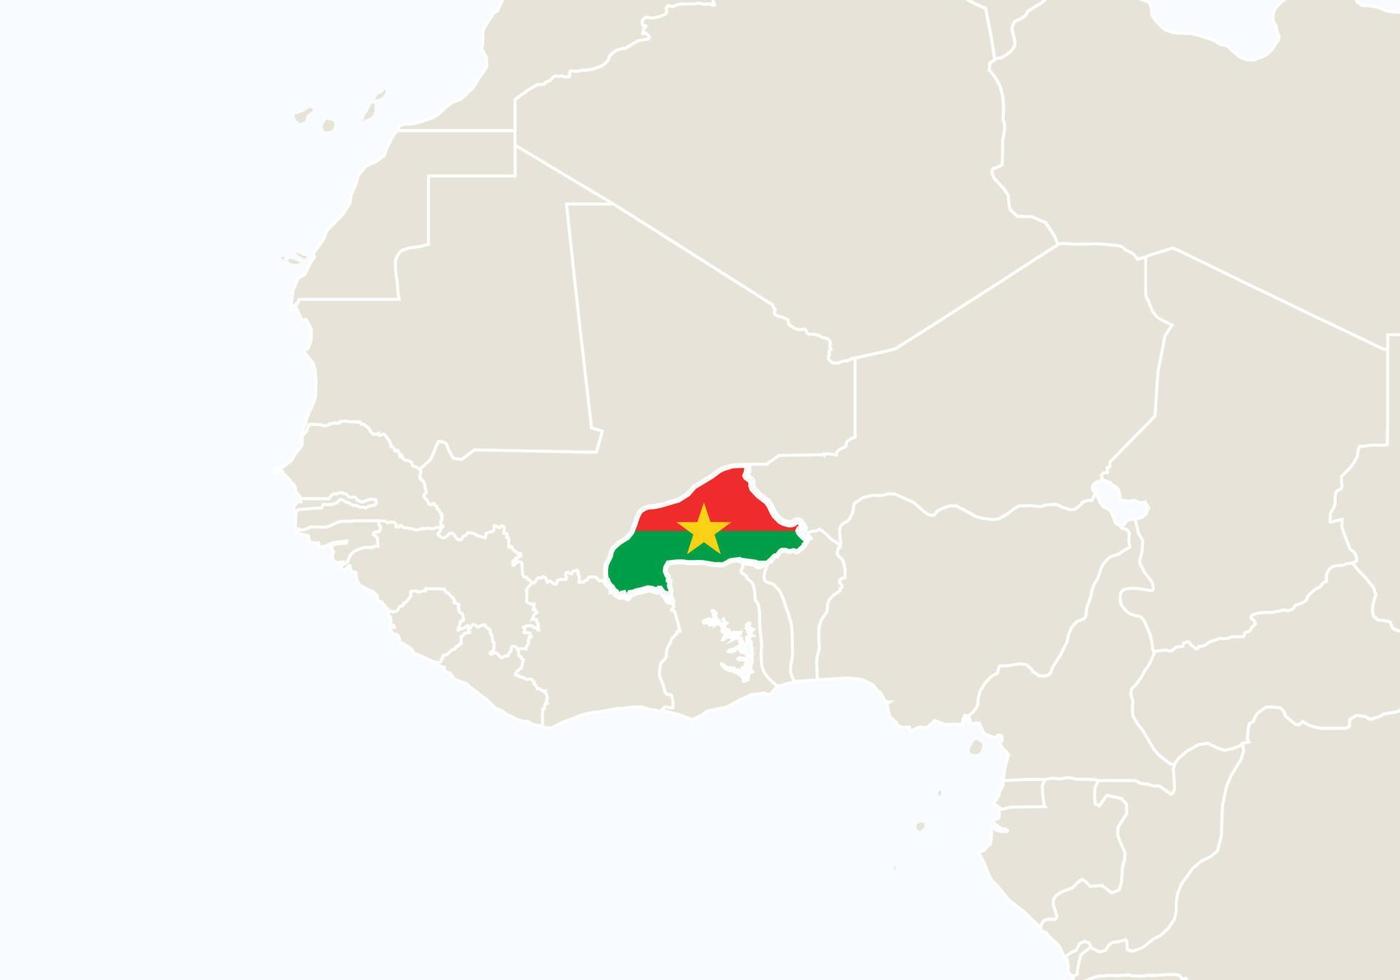 africa con mappa del burkina faso evidenziata. vettore